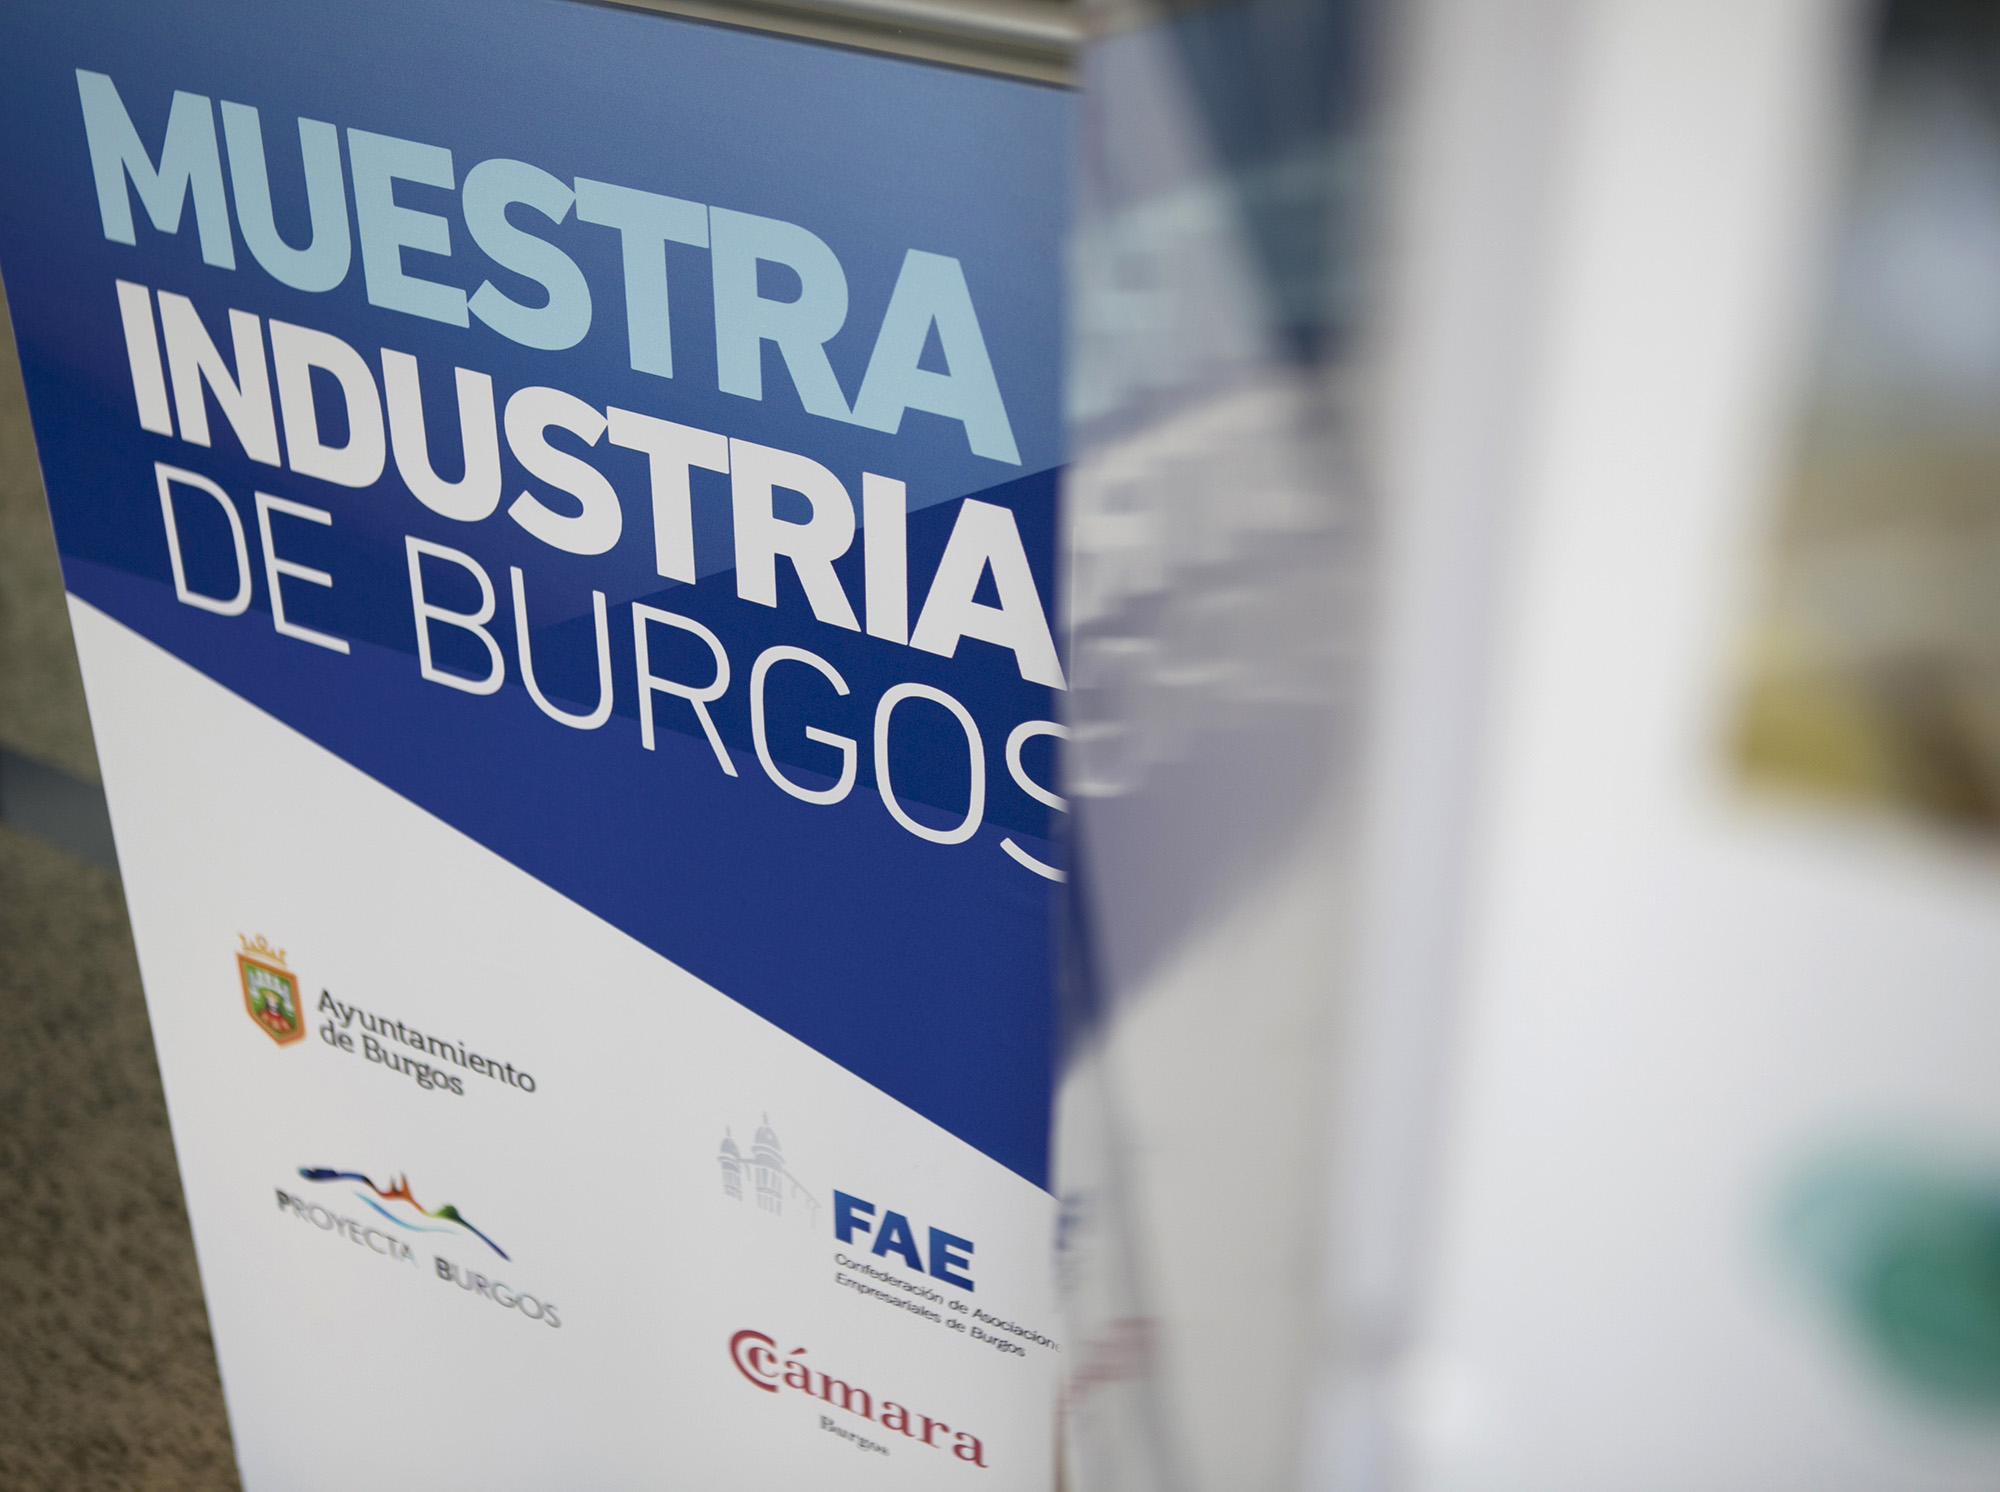 Muestra Industrial de Burgos 19/22 Noviembre 2014
Proyecto de Diseño y Gestión de o2studio Agencia de Publicidad con Sistema Constructivo en Cartón Triplo* 